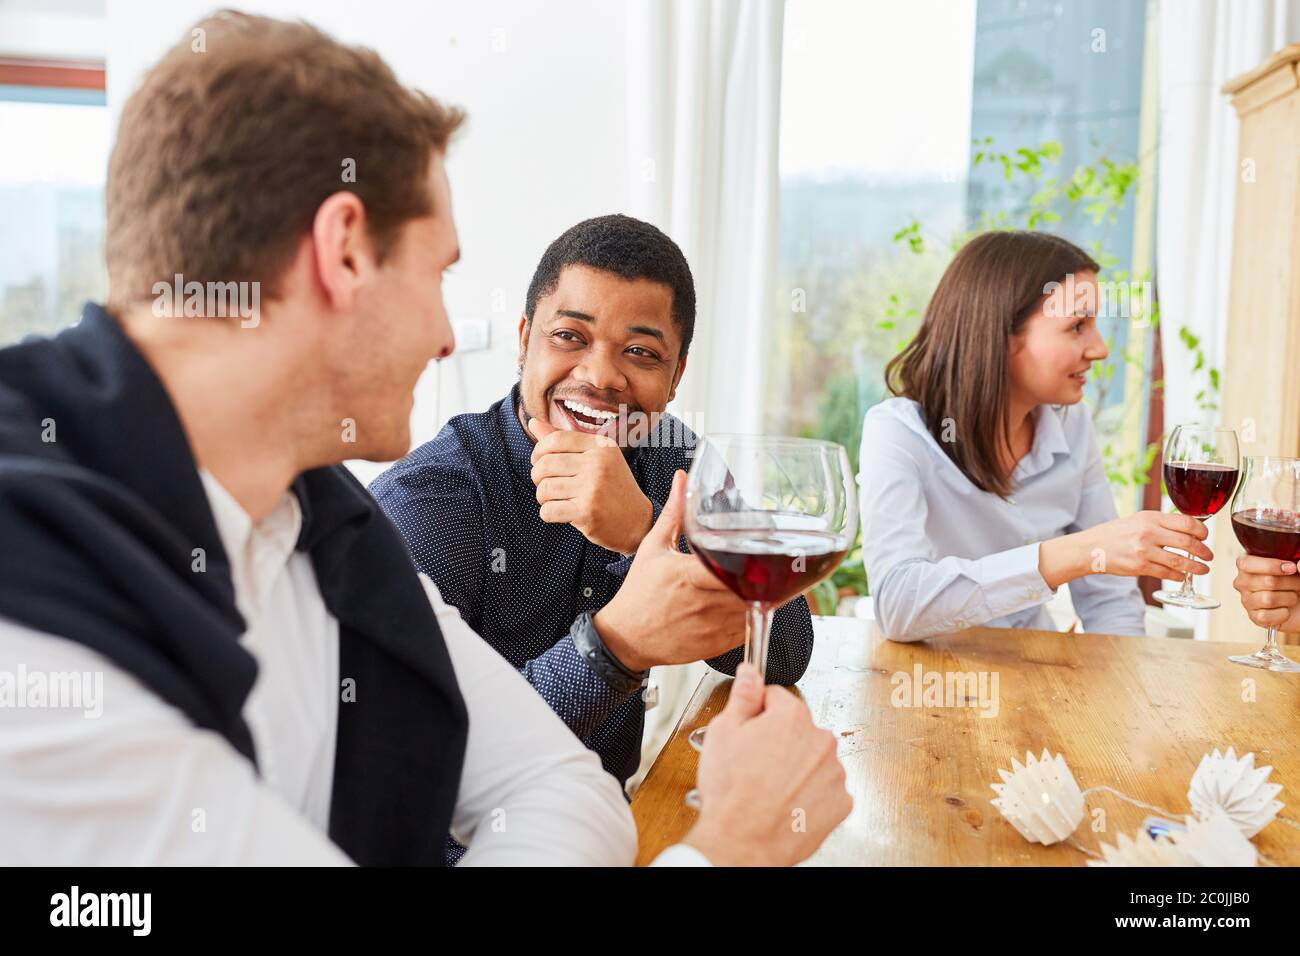 Deux hommes parlent l'un à l'autre avec un verre de vin lors d'une fête d'anniversaire Banque D'Images